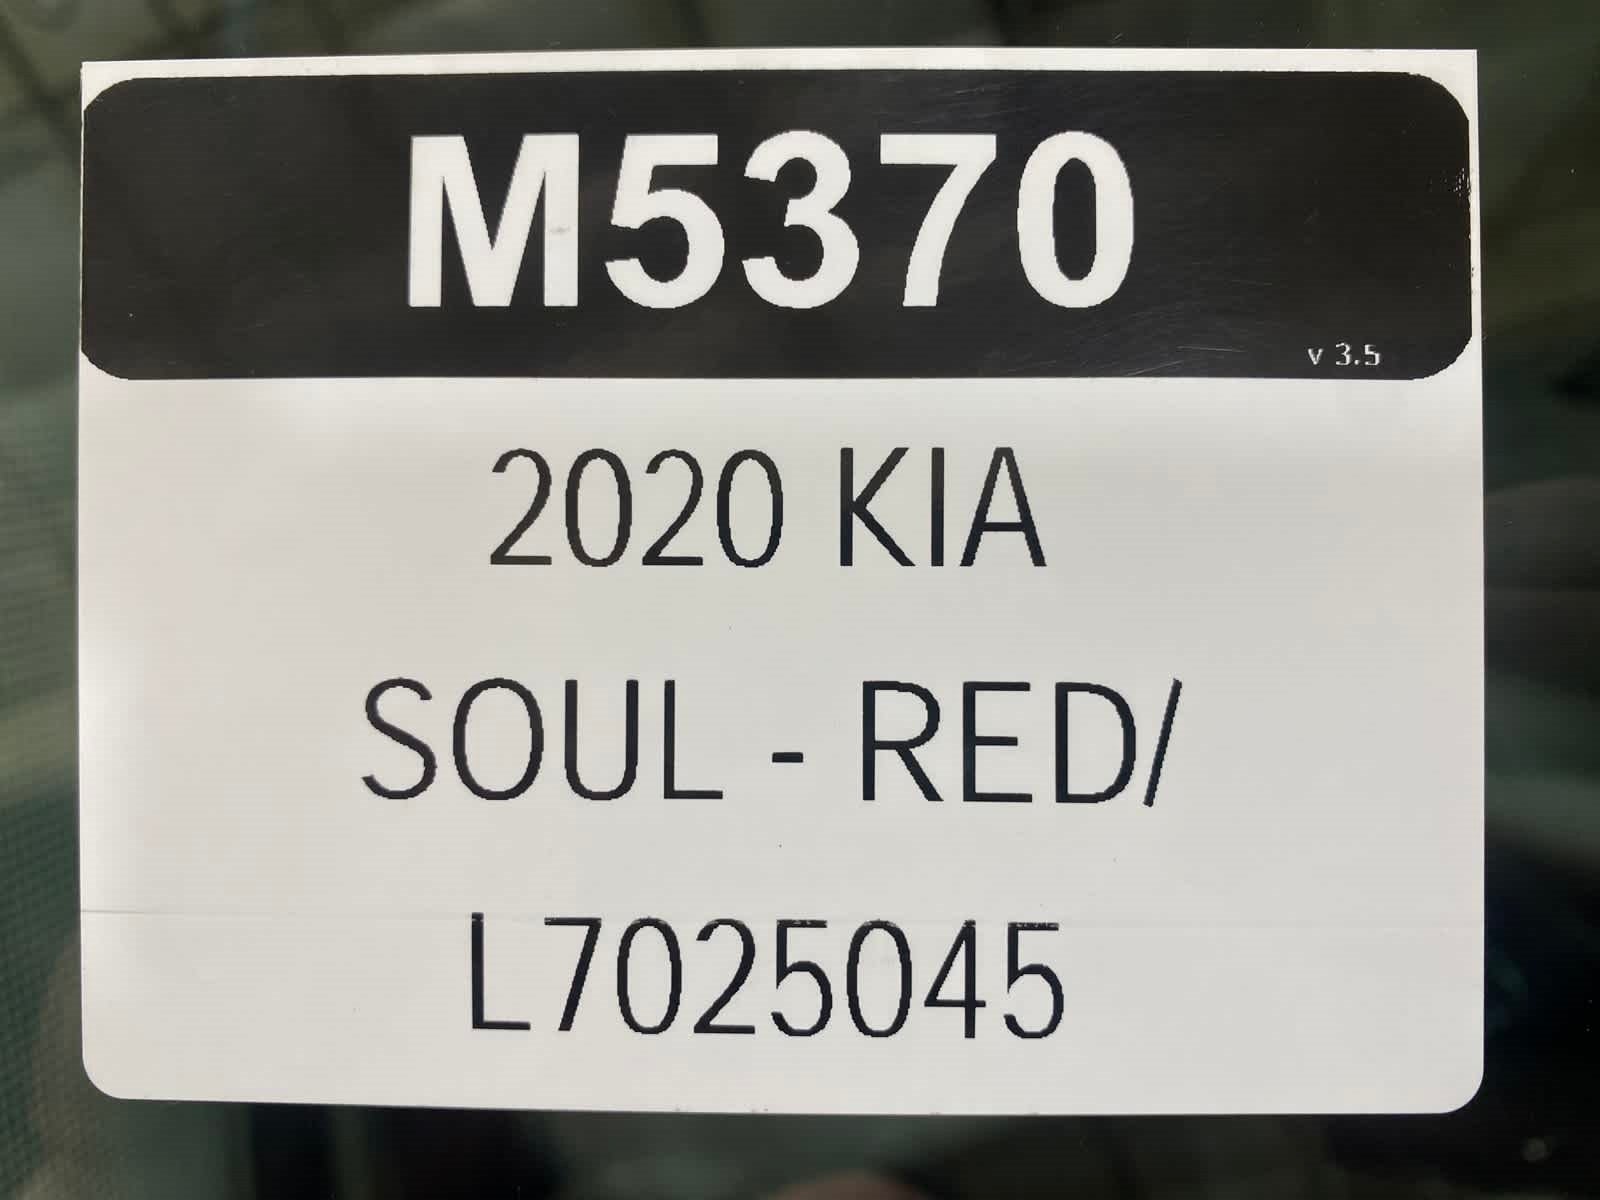 2020 Kia Soul LX